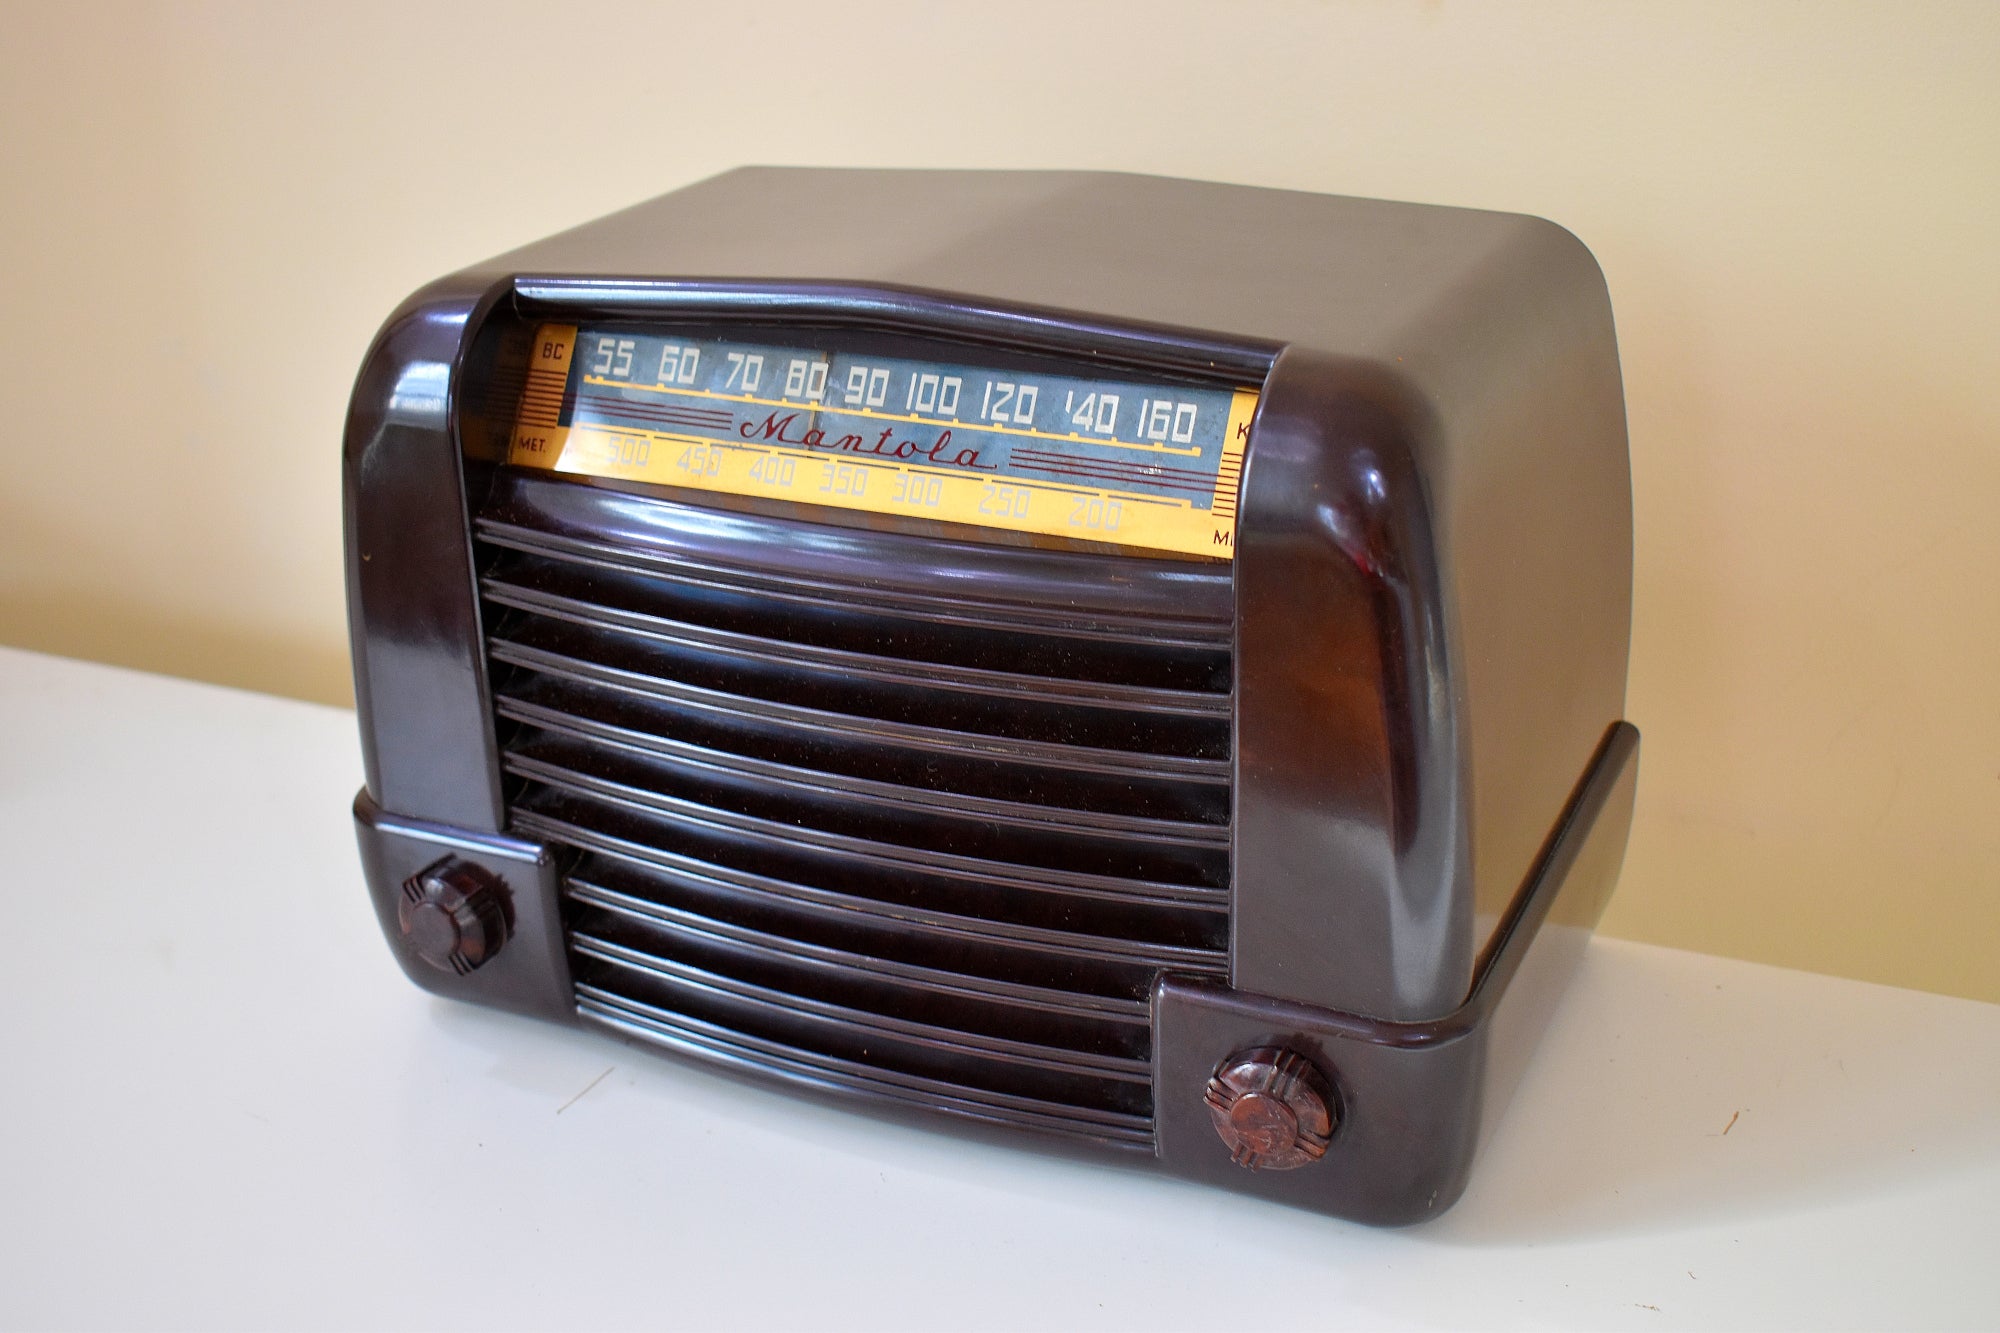 ハンサム 1946 マントラ モデル R654-PM マーブルブラウン ベークライト真空管 AM クロック ラジオ 良好な状態 良好な状態とサウンド！